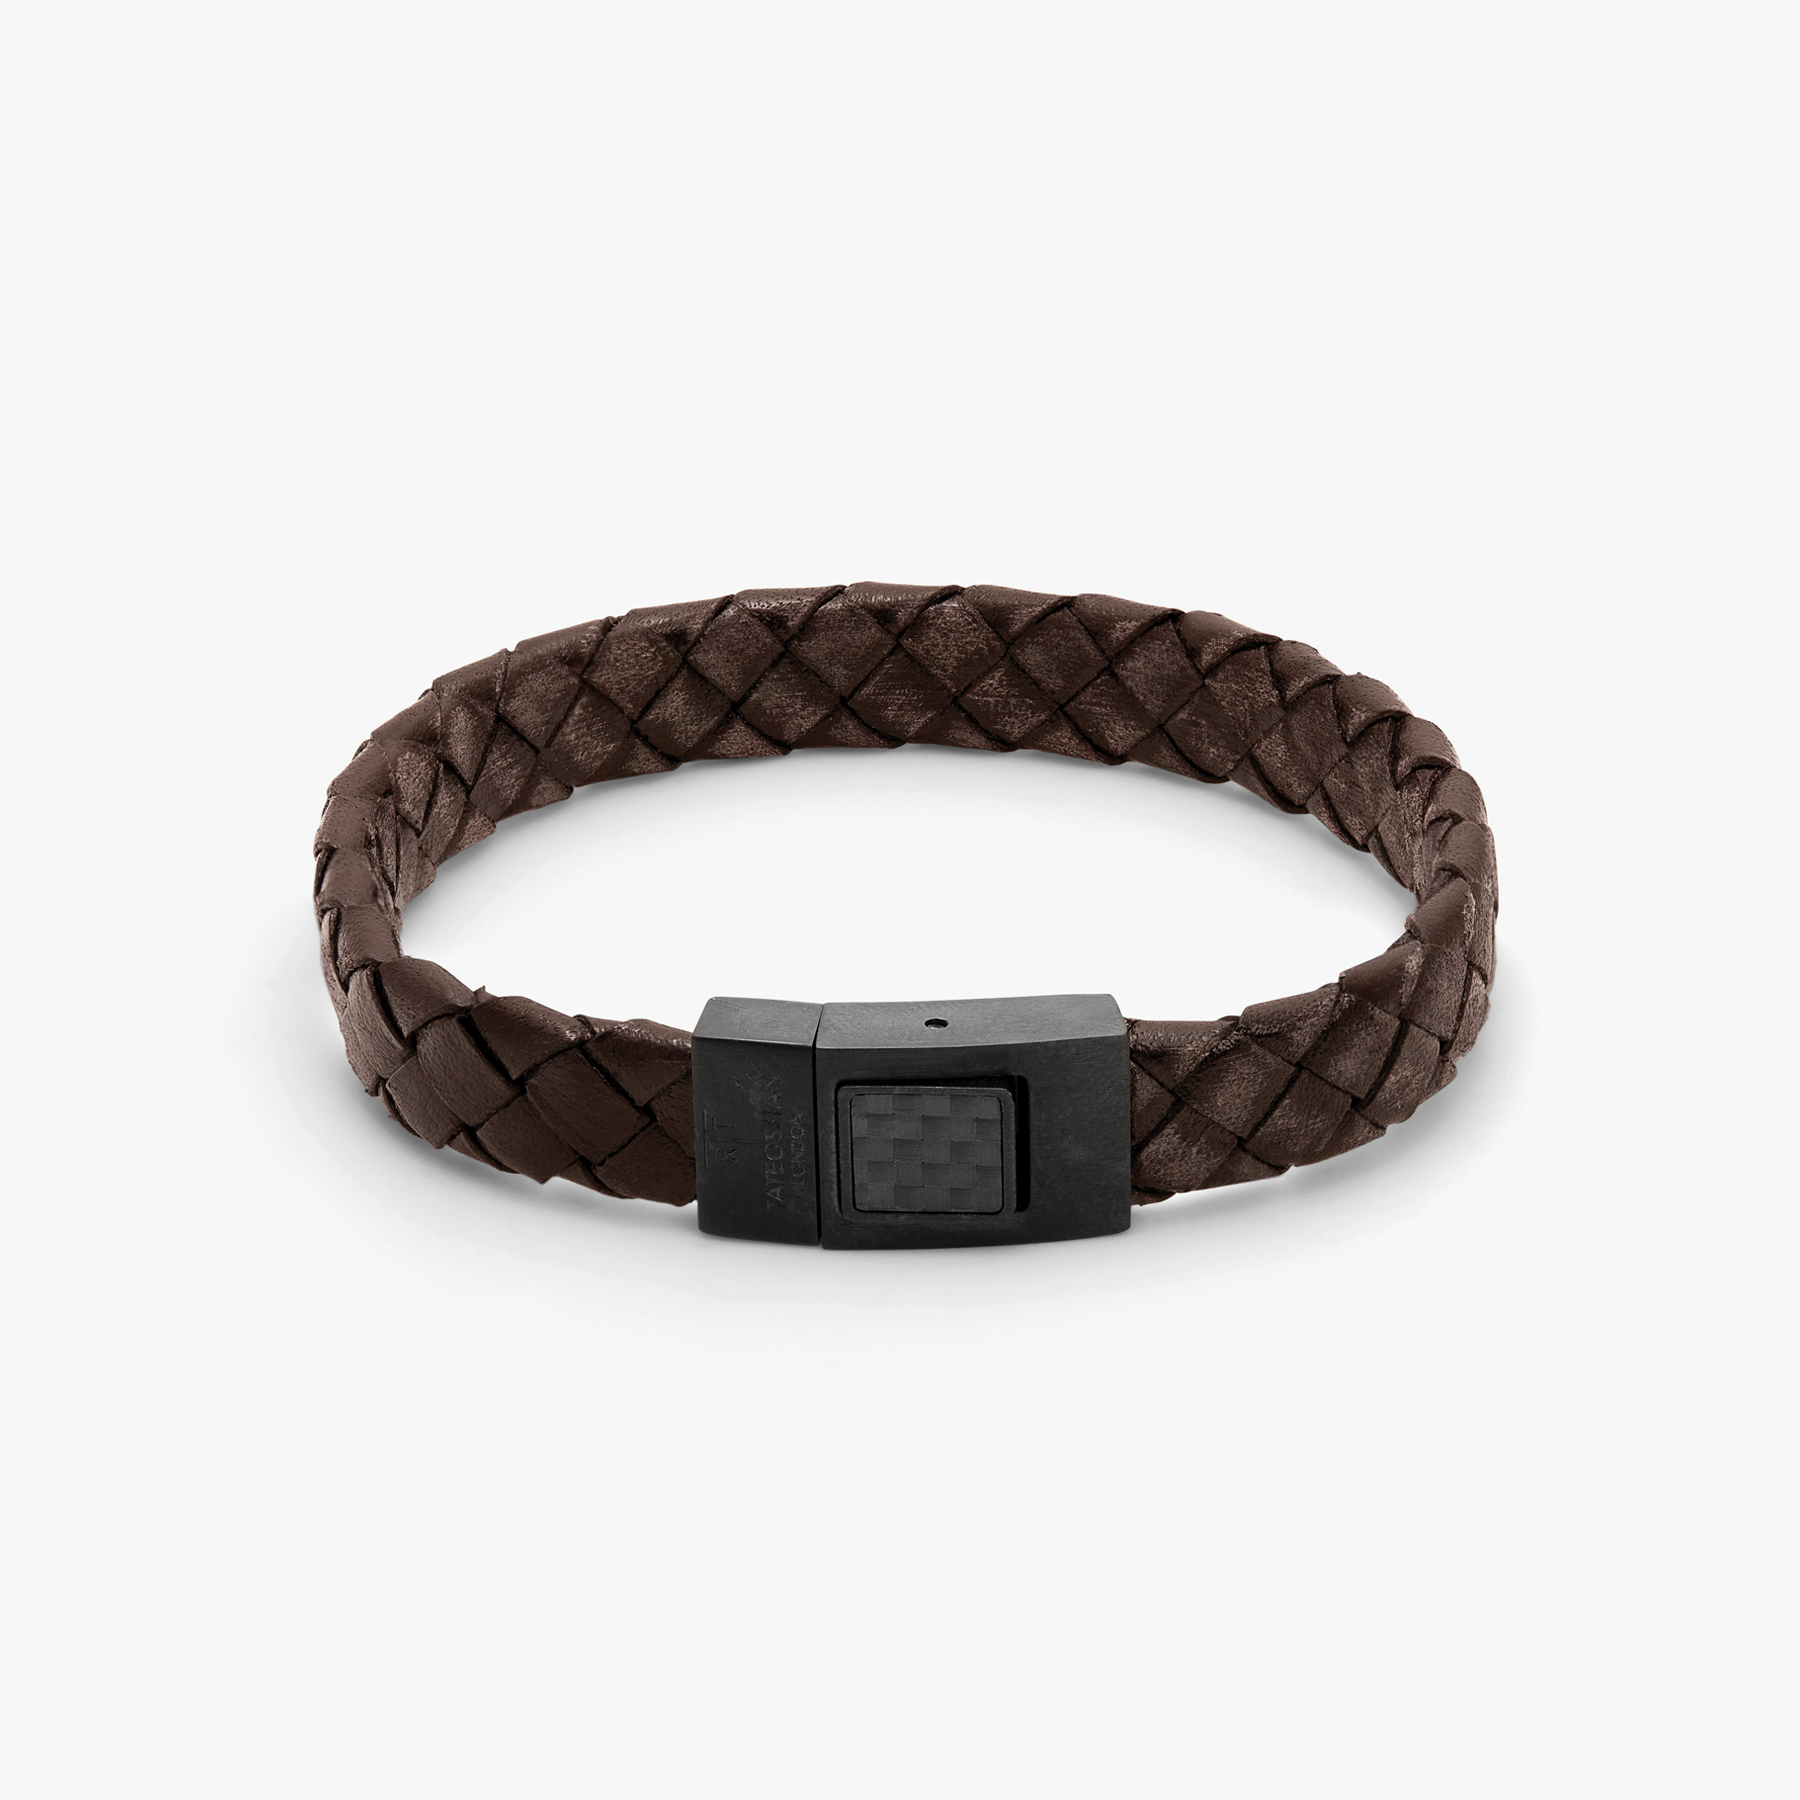 Ermenegildo Zegna Men's Double Wrap Leather Bracelet